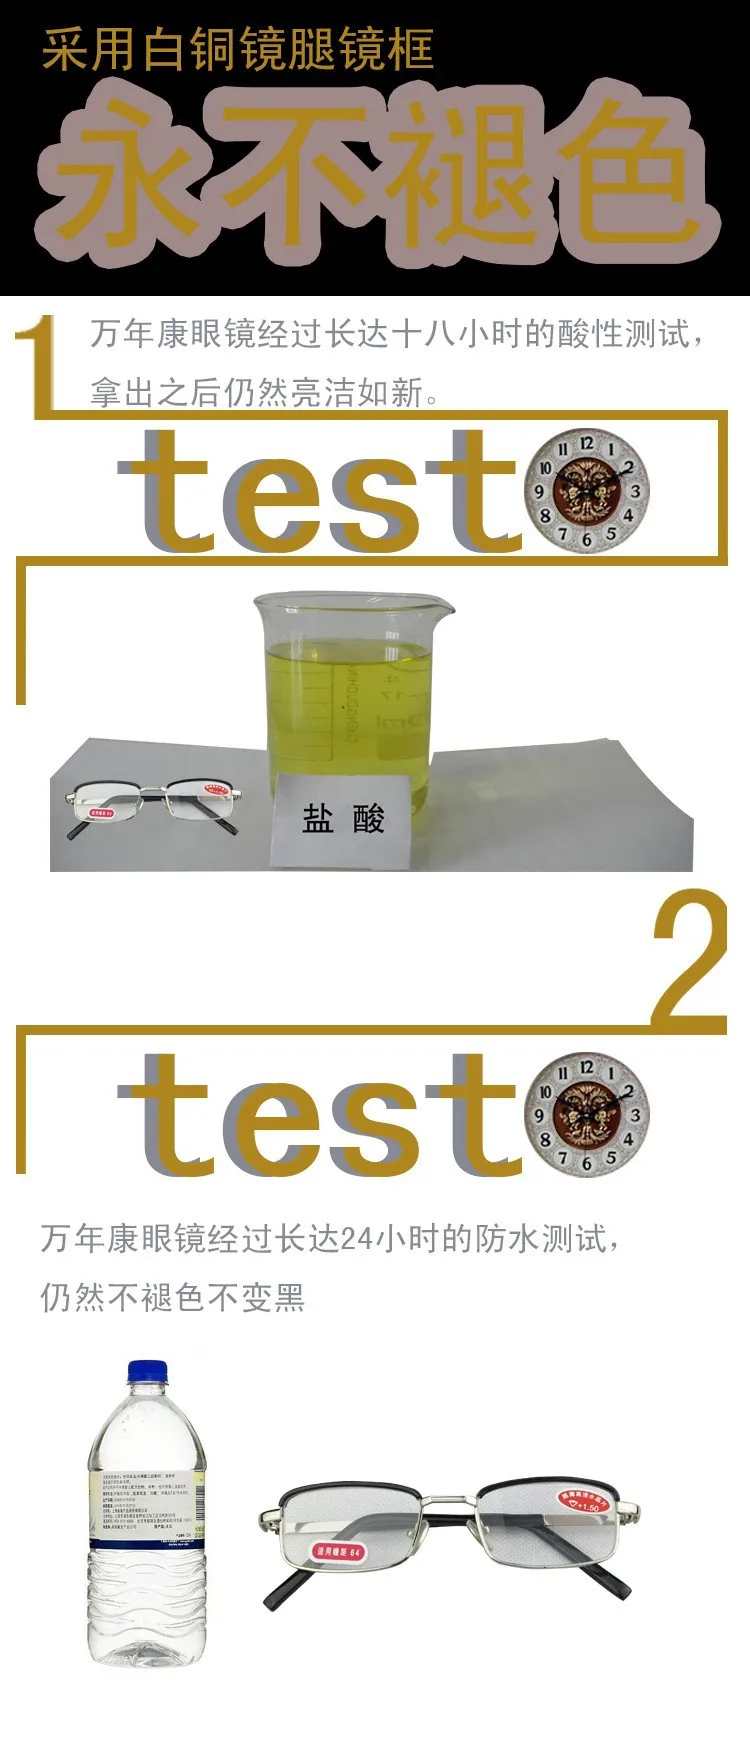 Leesbril [2 пары] натуральный кристалл линзы полный обод китайский стиль и фарфоровая шкатулка для мужчин и женщин очки для чтения+ 1+ 1,5+ 2+ 2,5+ 3+ 3,5+ 4